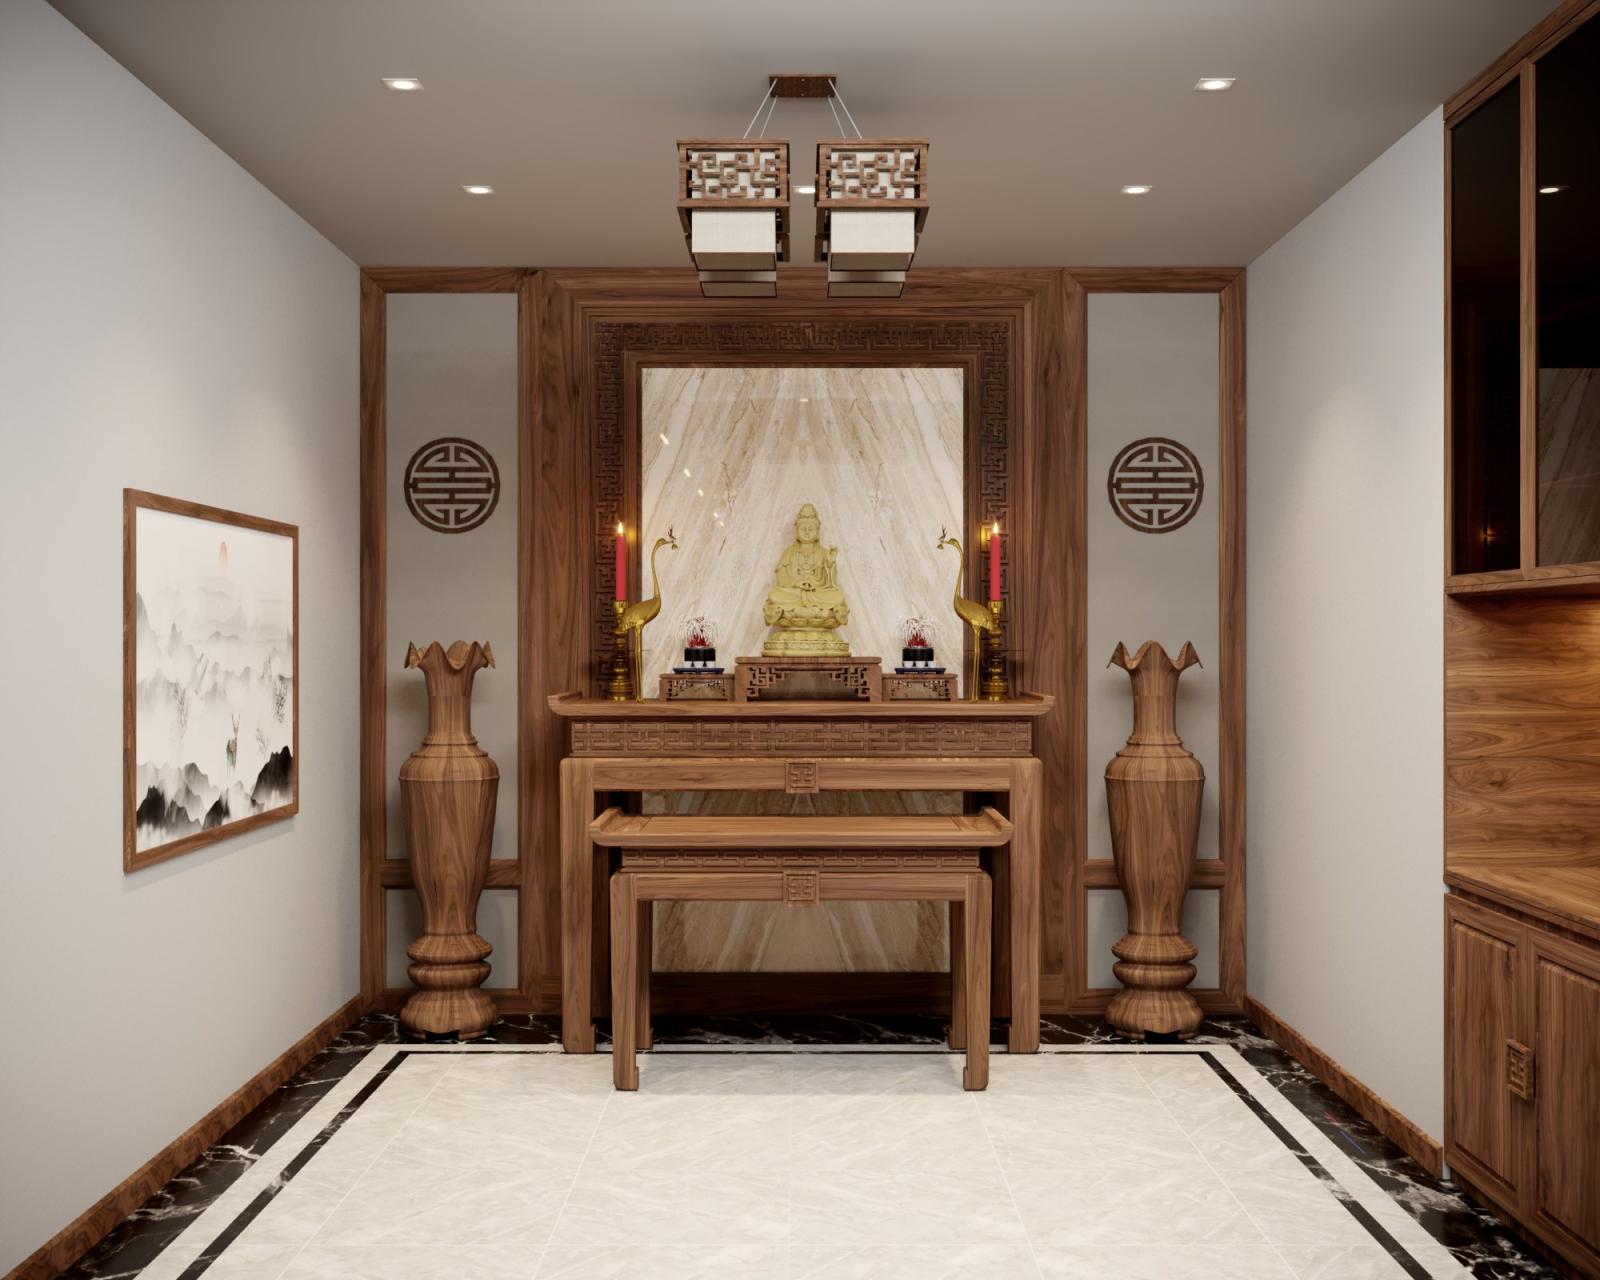 Không gian phòng thờ trang nghiêm thể hiện lòng tôn kính với các bậc tổ tiên.